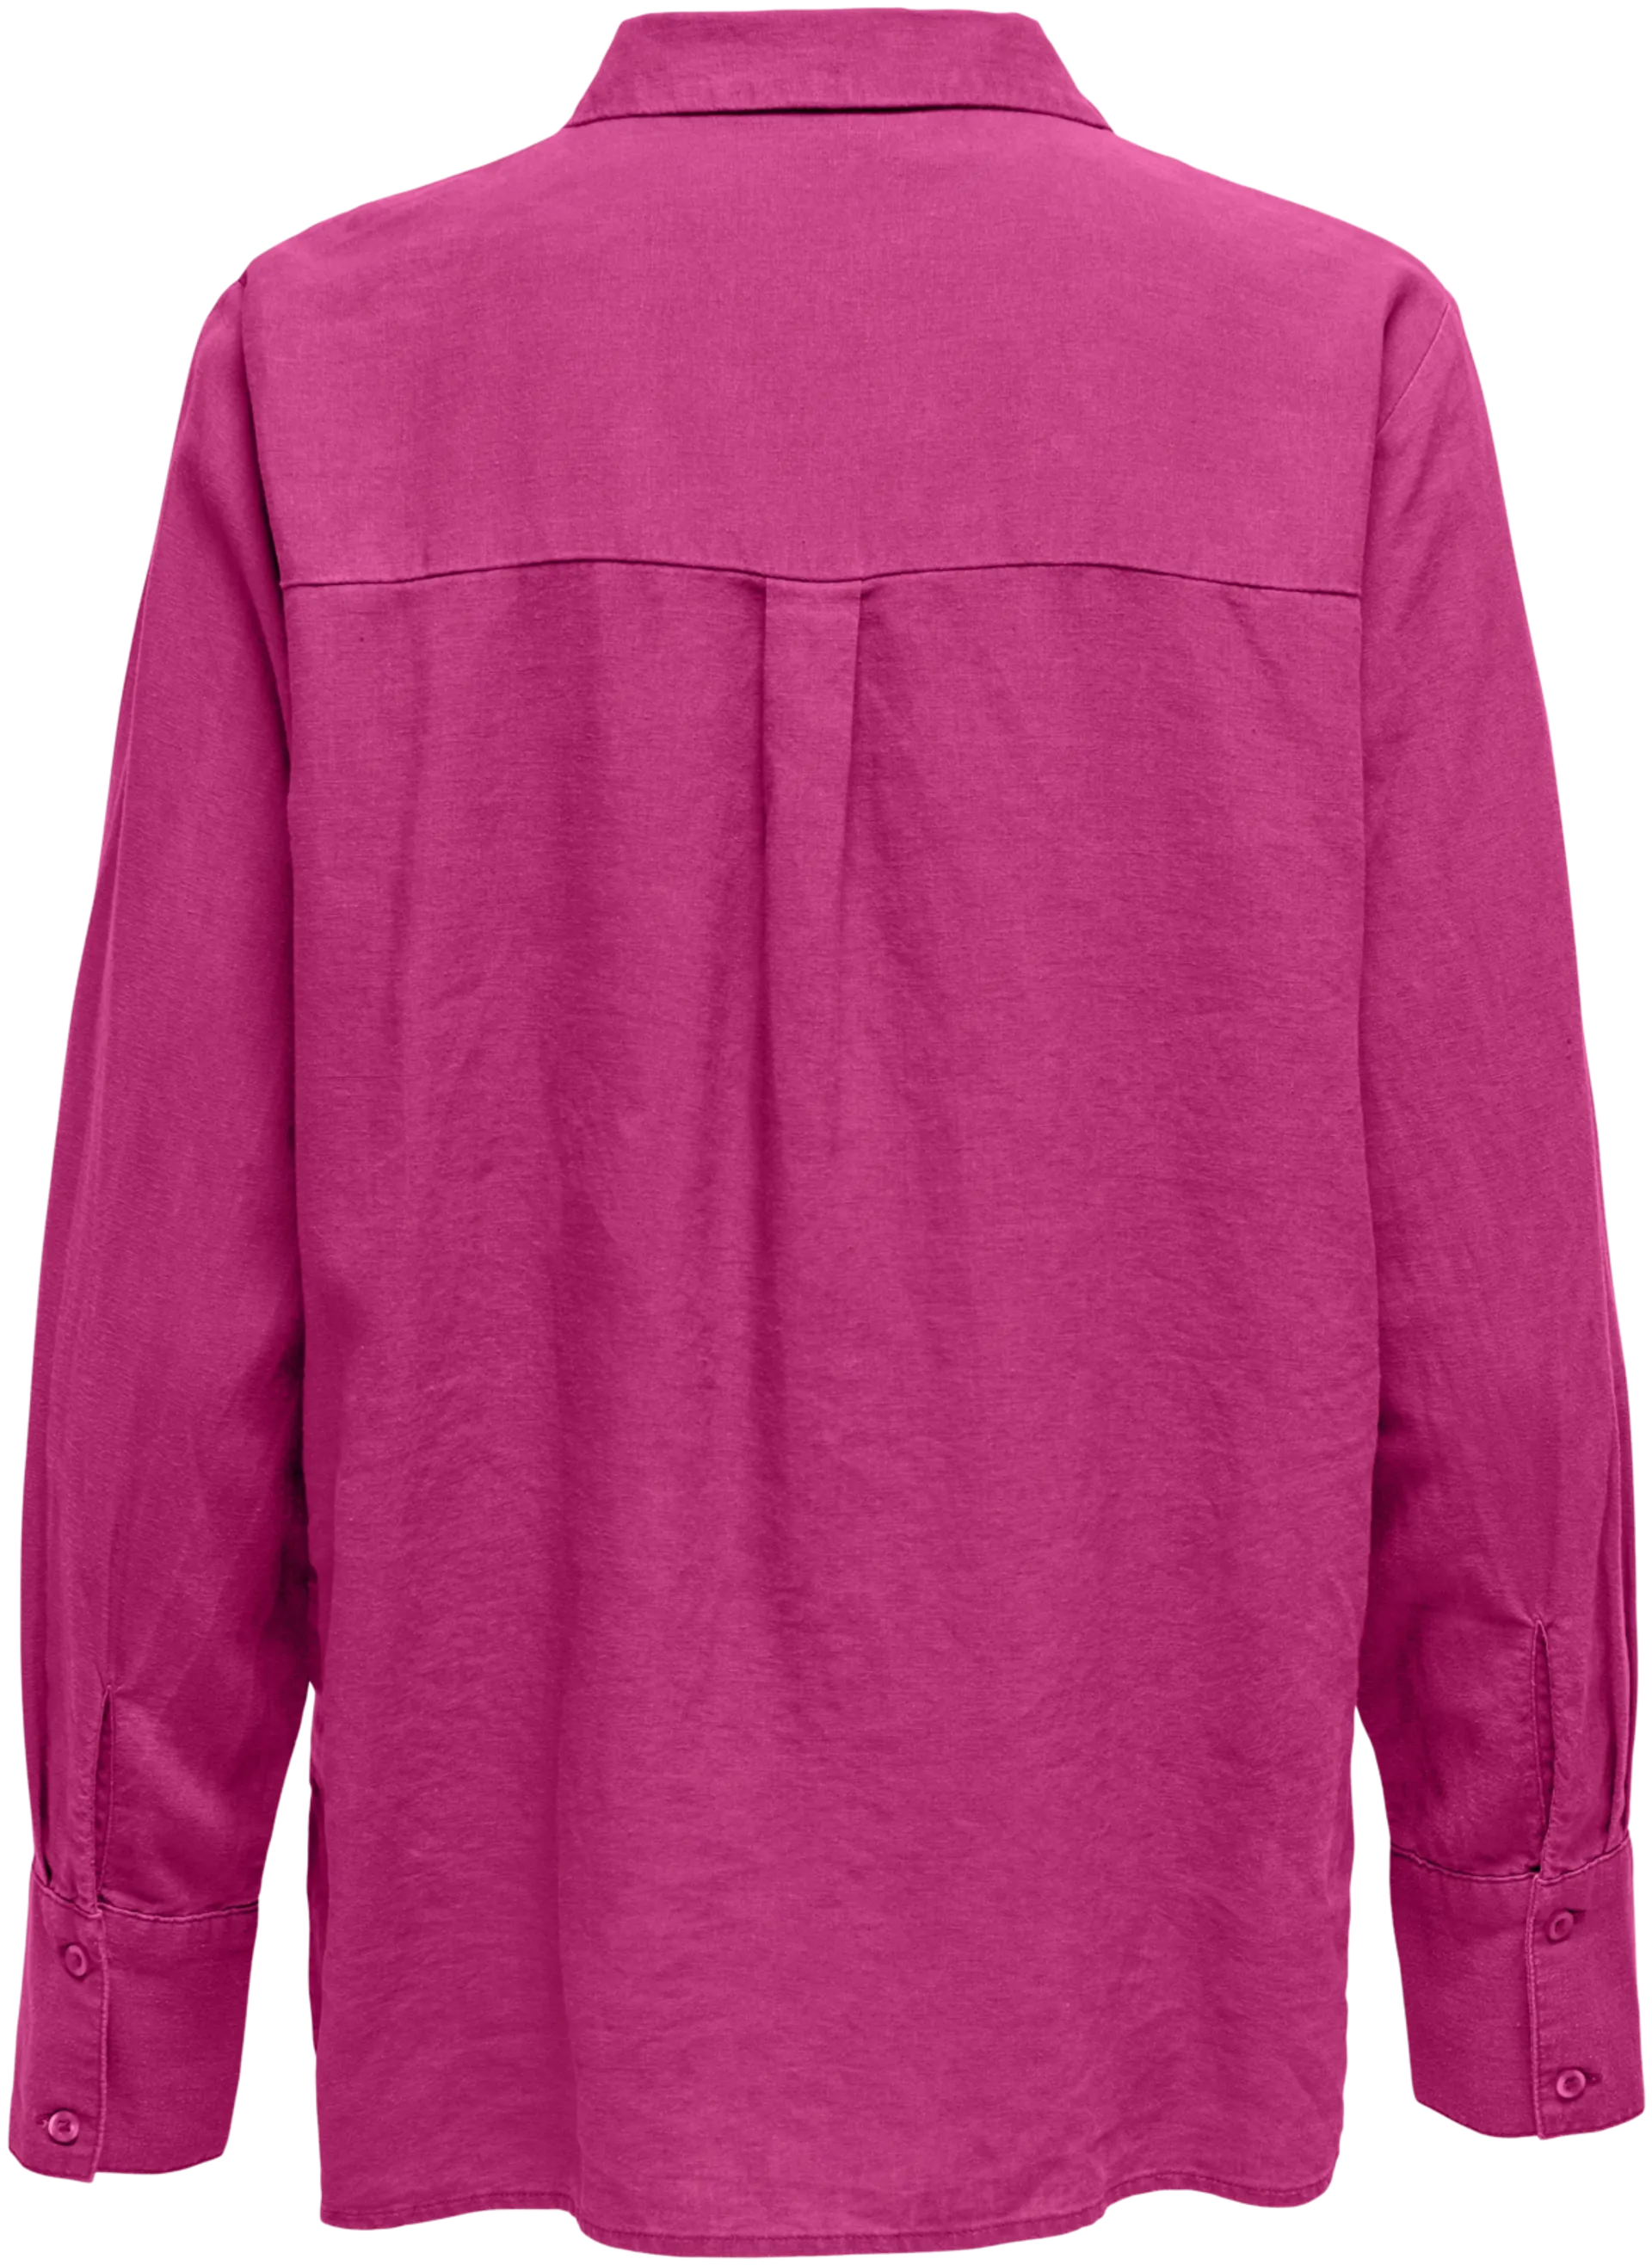 Naisten paita say jdy - Fuchsia purple - 2